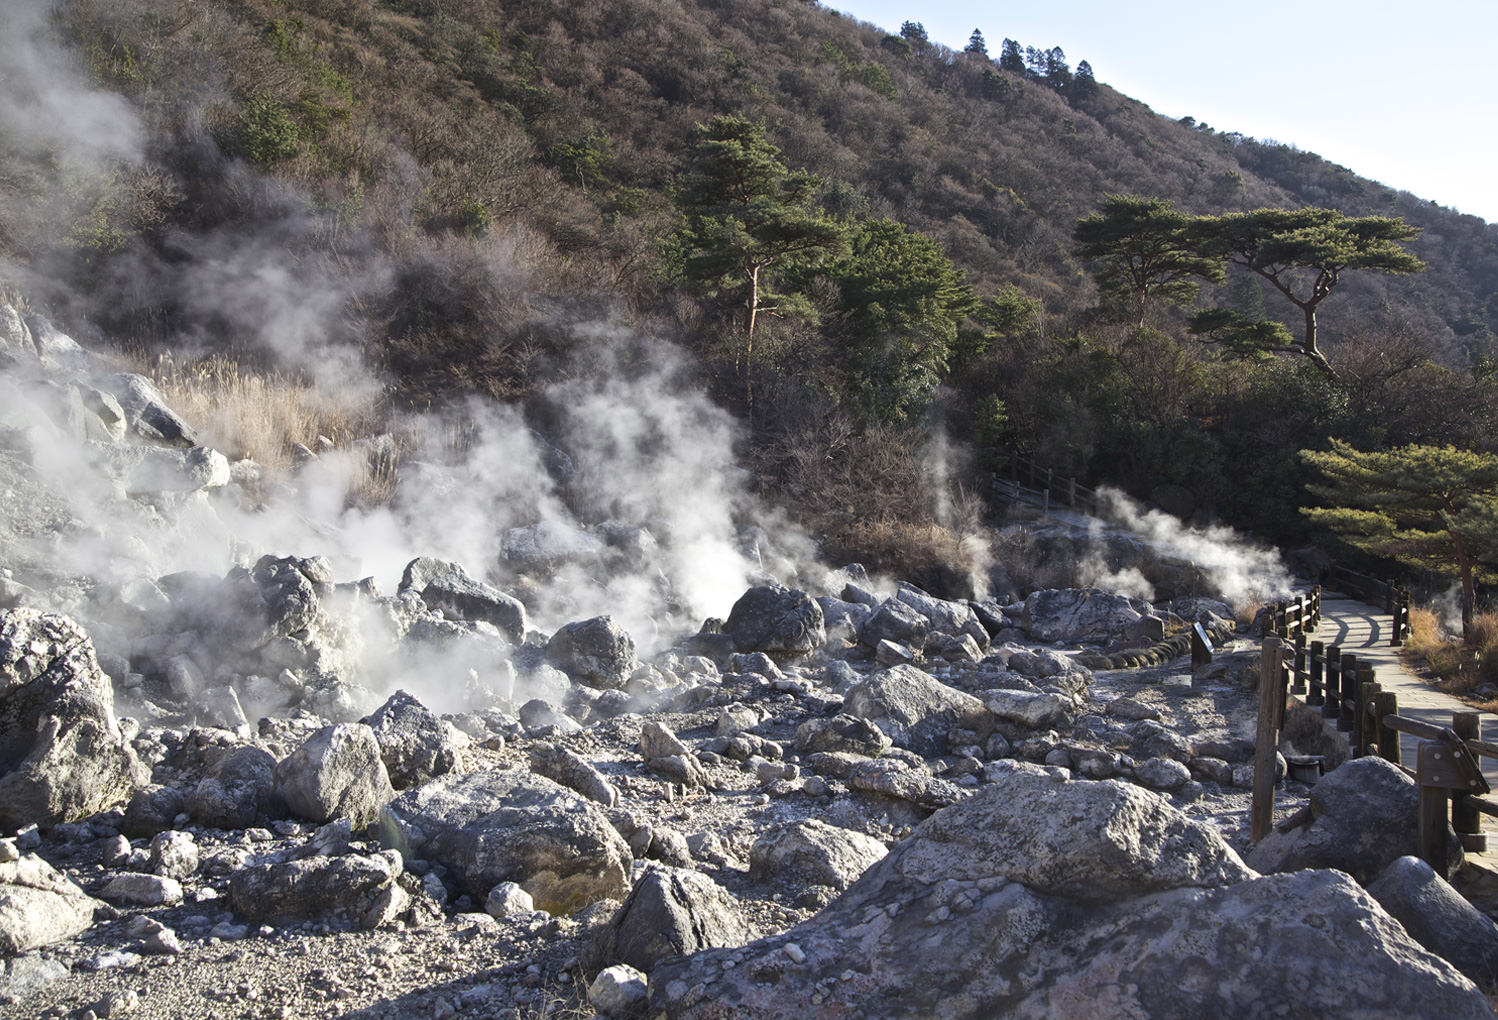 나가사키와 아마쿠사지방의 ‘잠복 크리스천’ 관련 유산에 관한：고문이 행해졌던 운젠지옥고문이 행해졌던 운젠지옥